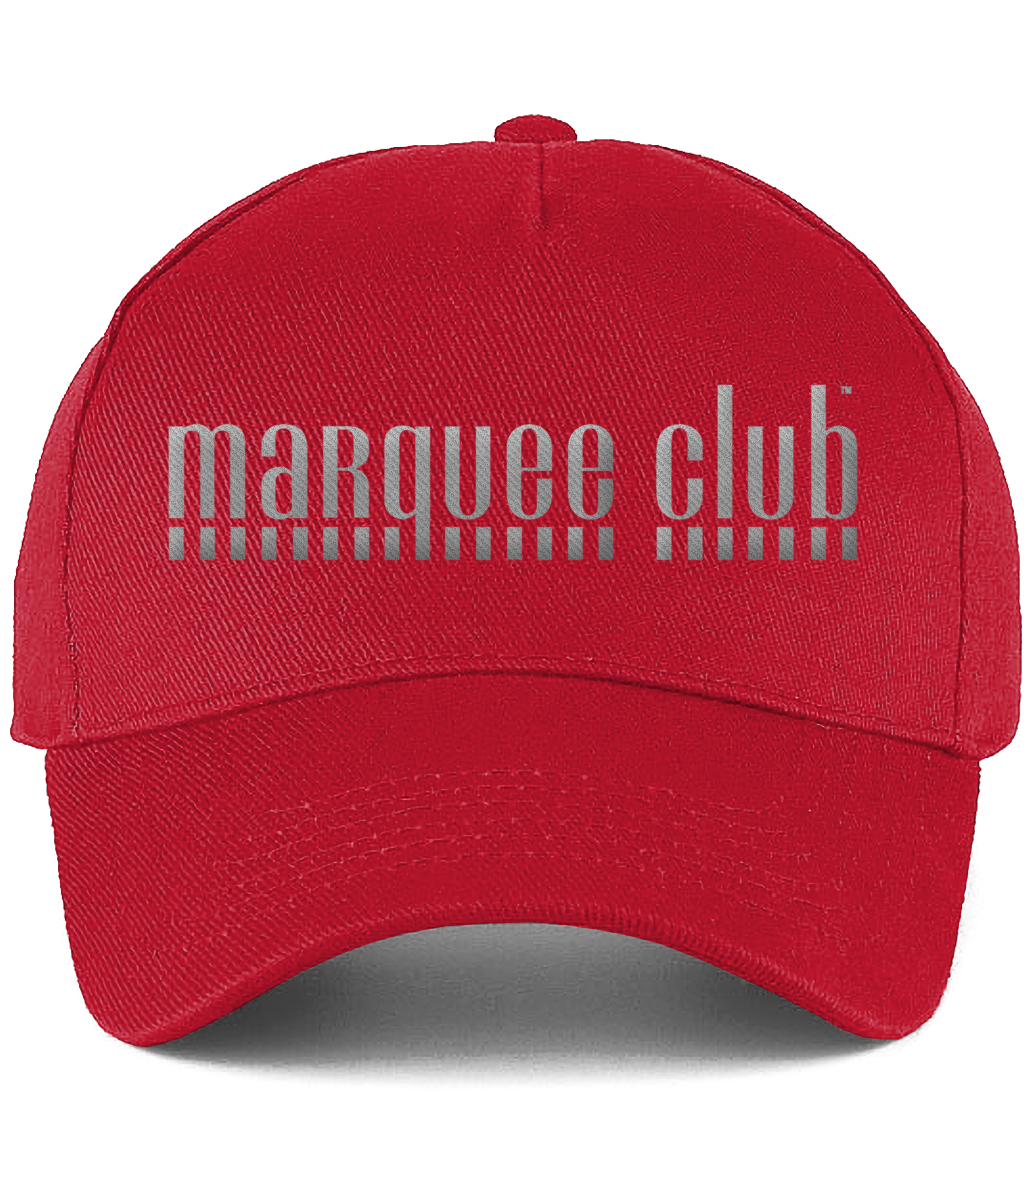 Marquee Club Baseball Cap